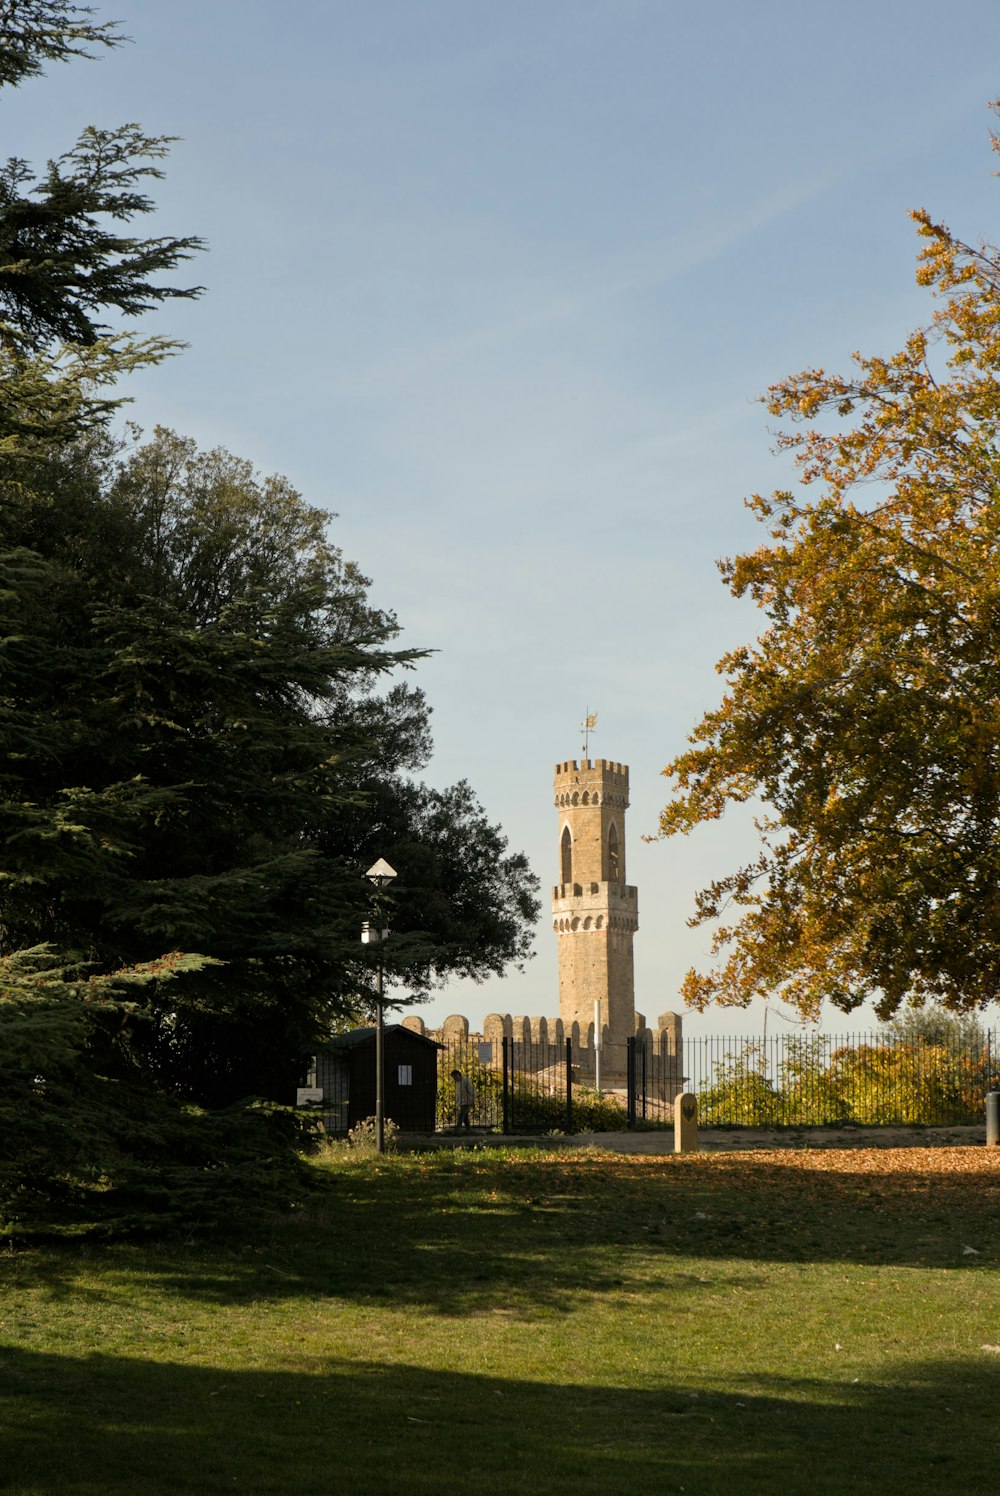 緑豊かな公園にそびえる高い時計塔